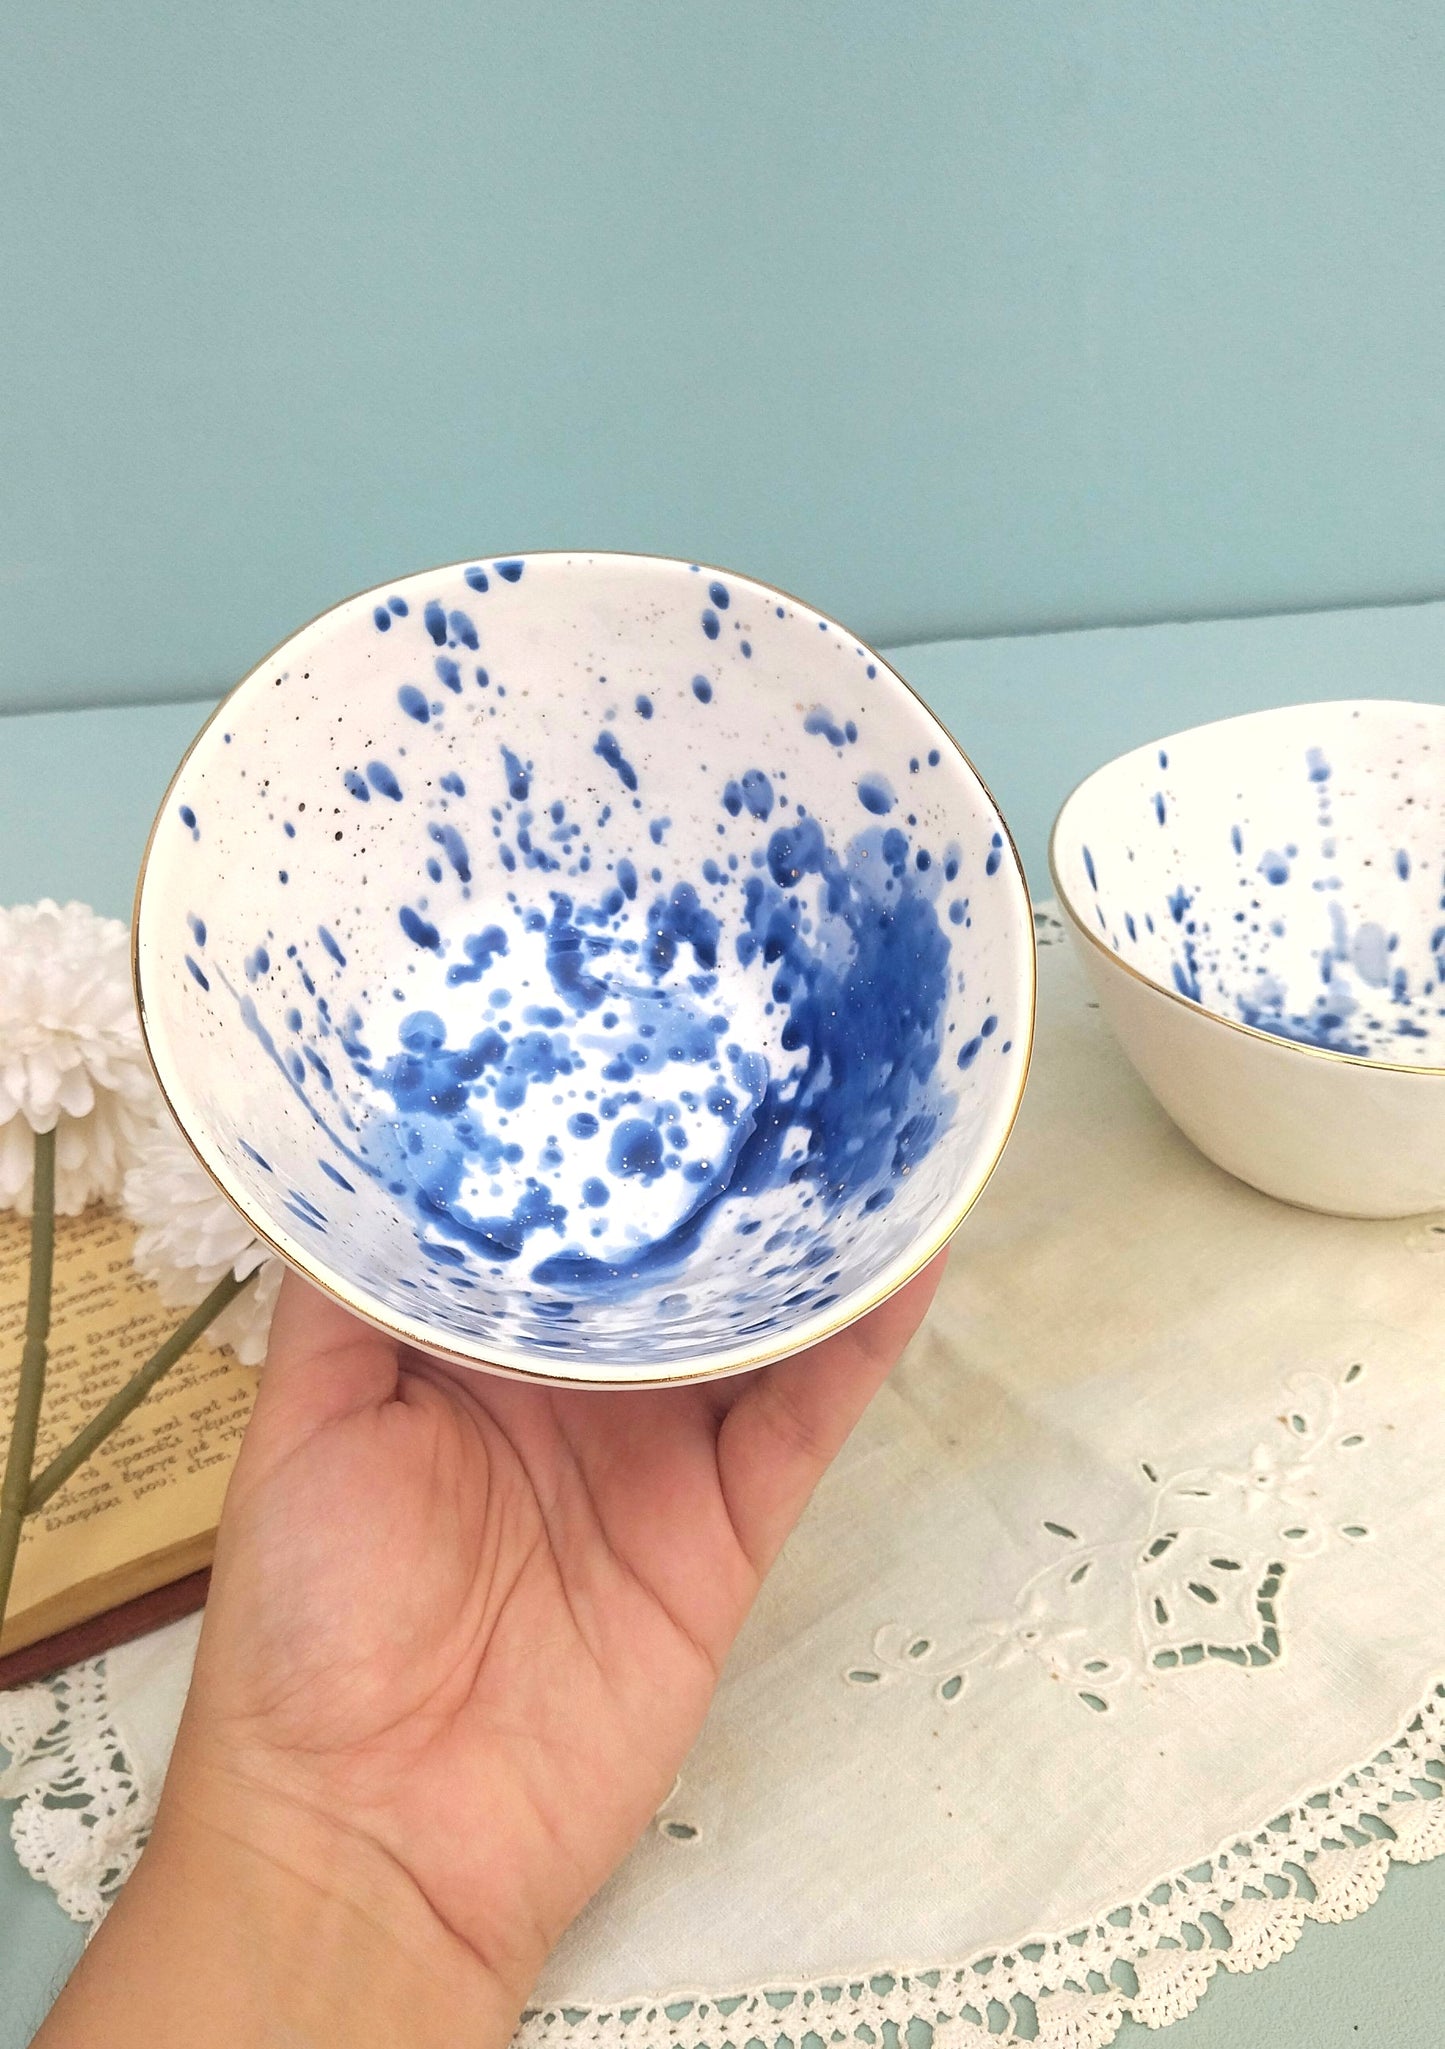 Gold Ceramic Rimmed Bowl, White Porcelain Bowls With Cobalt Splashes, Fine Dining Set Of 2